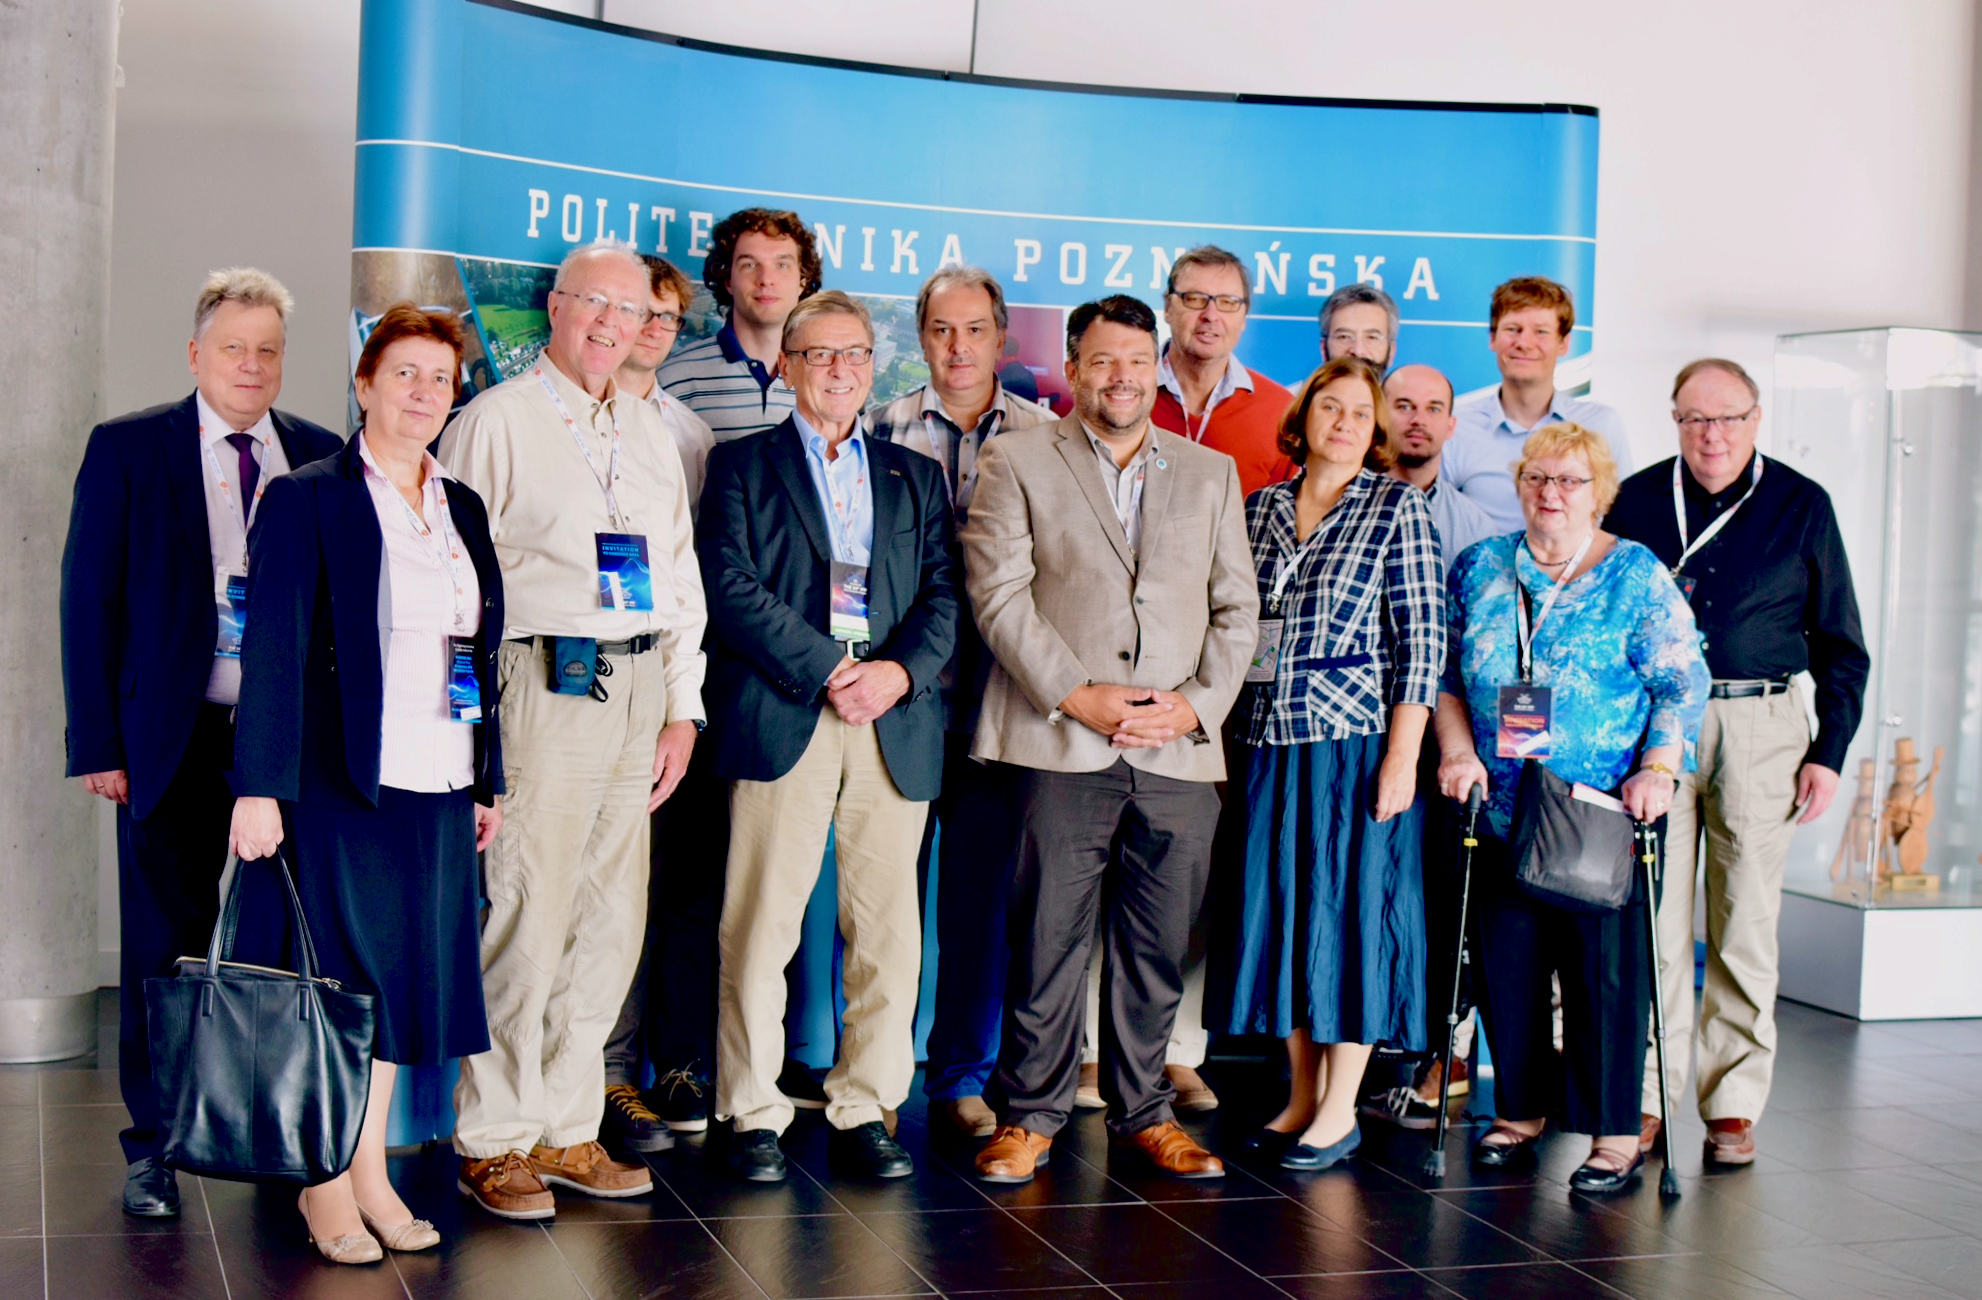 Delegates to the 2018 workshop in Poznań.